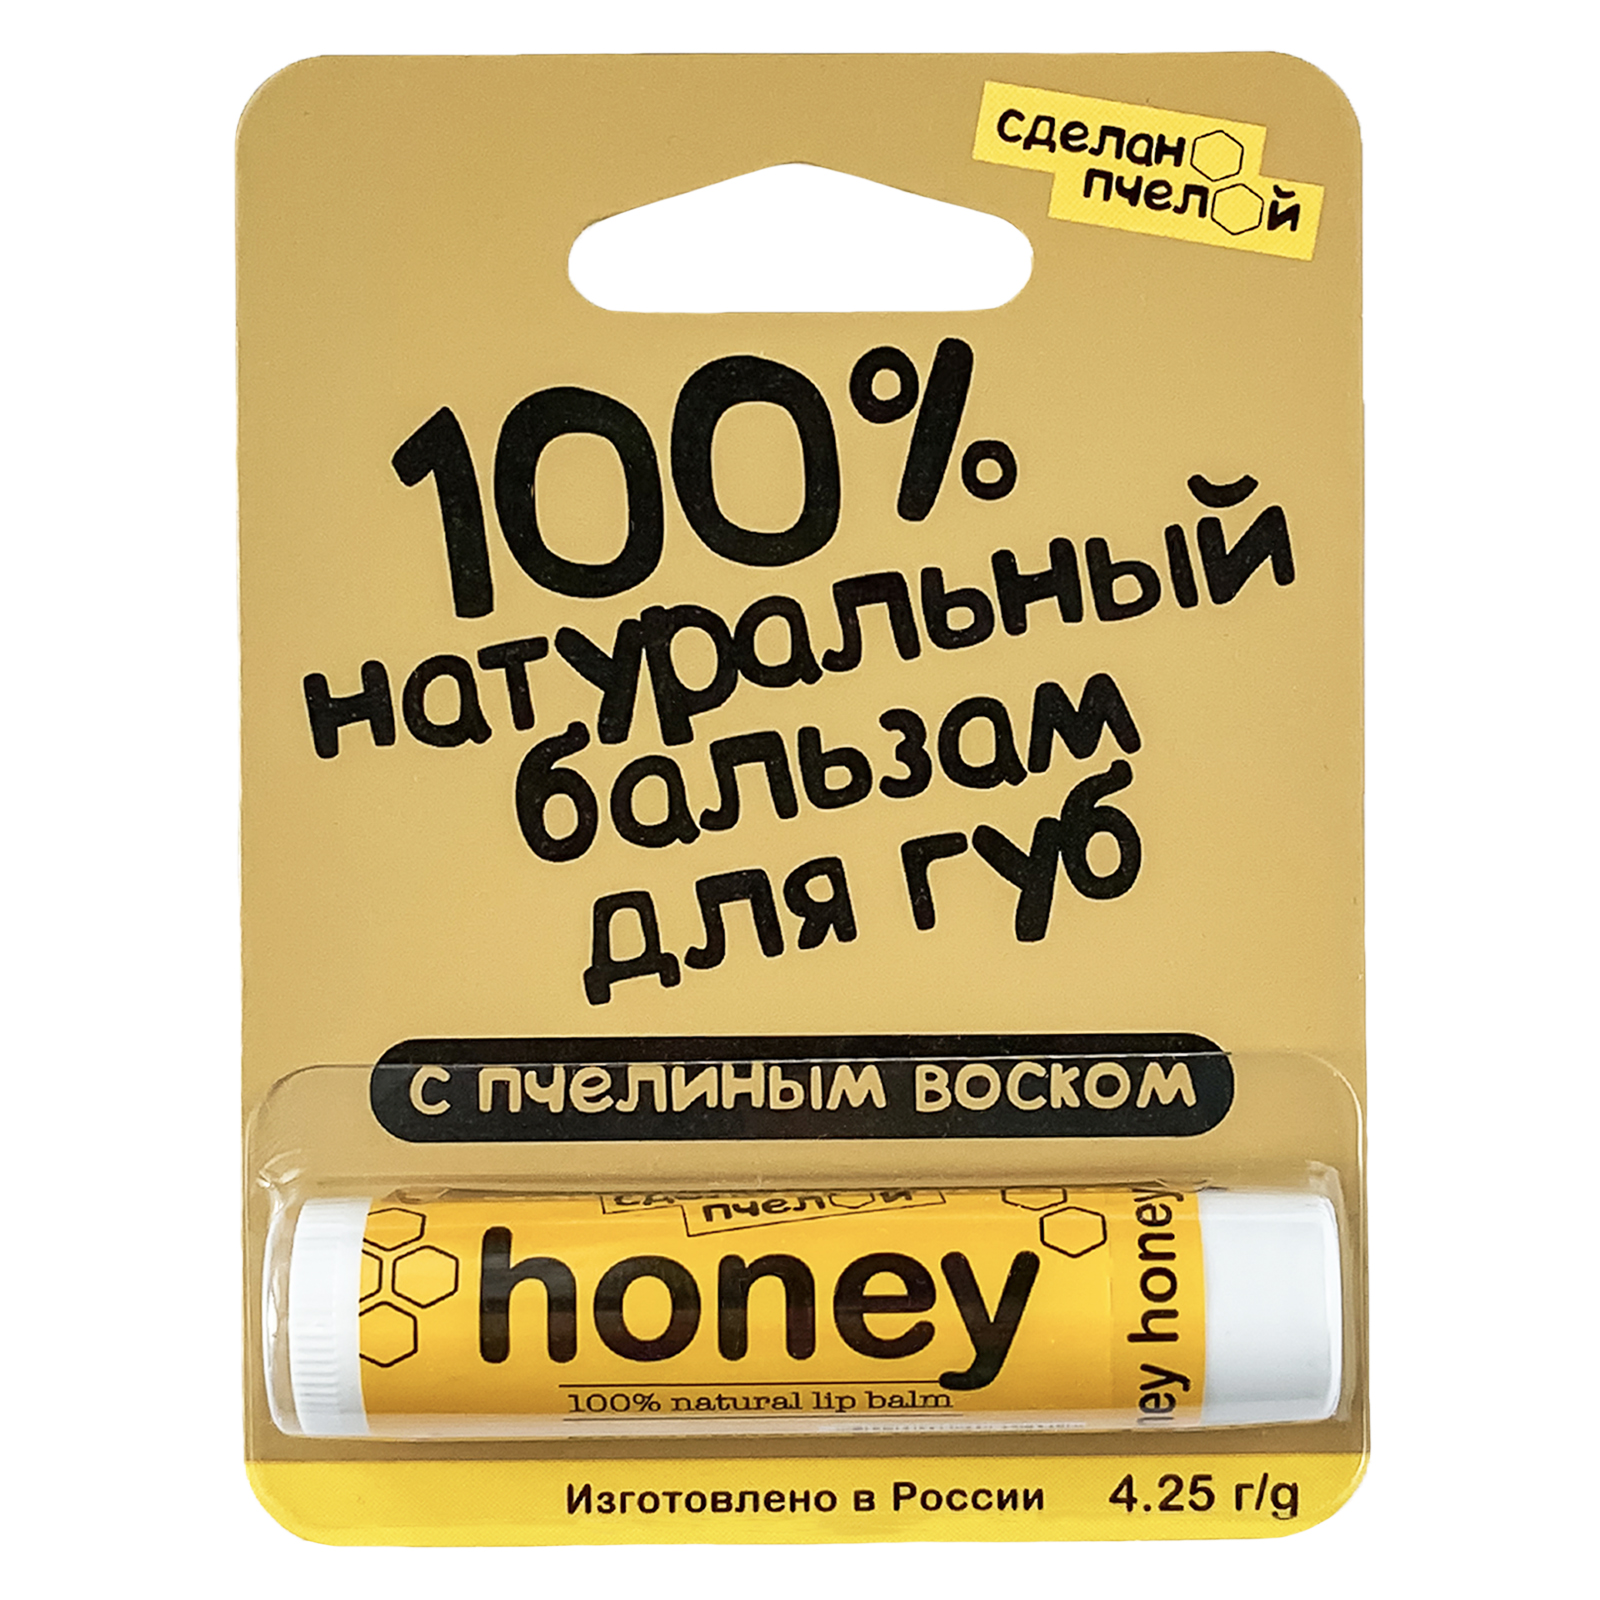 Бальзам для губ с пчелиным воском "honey" купить 